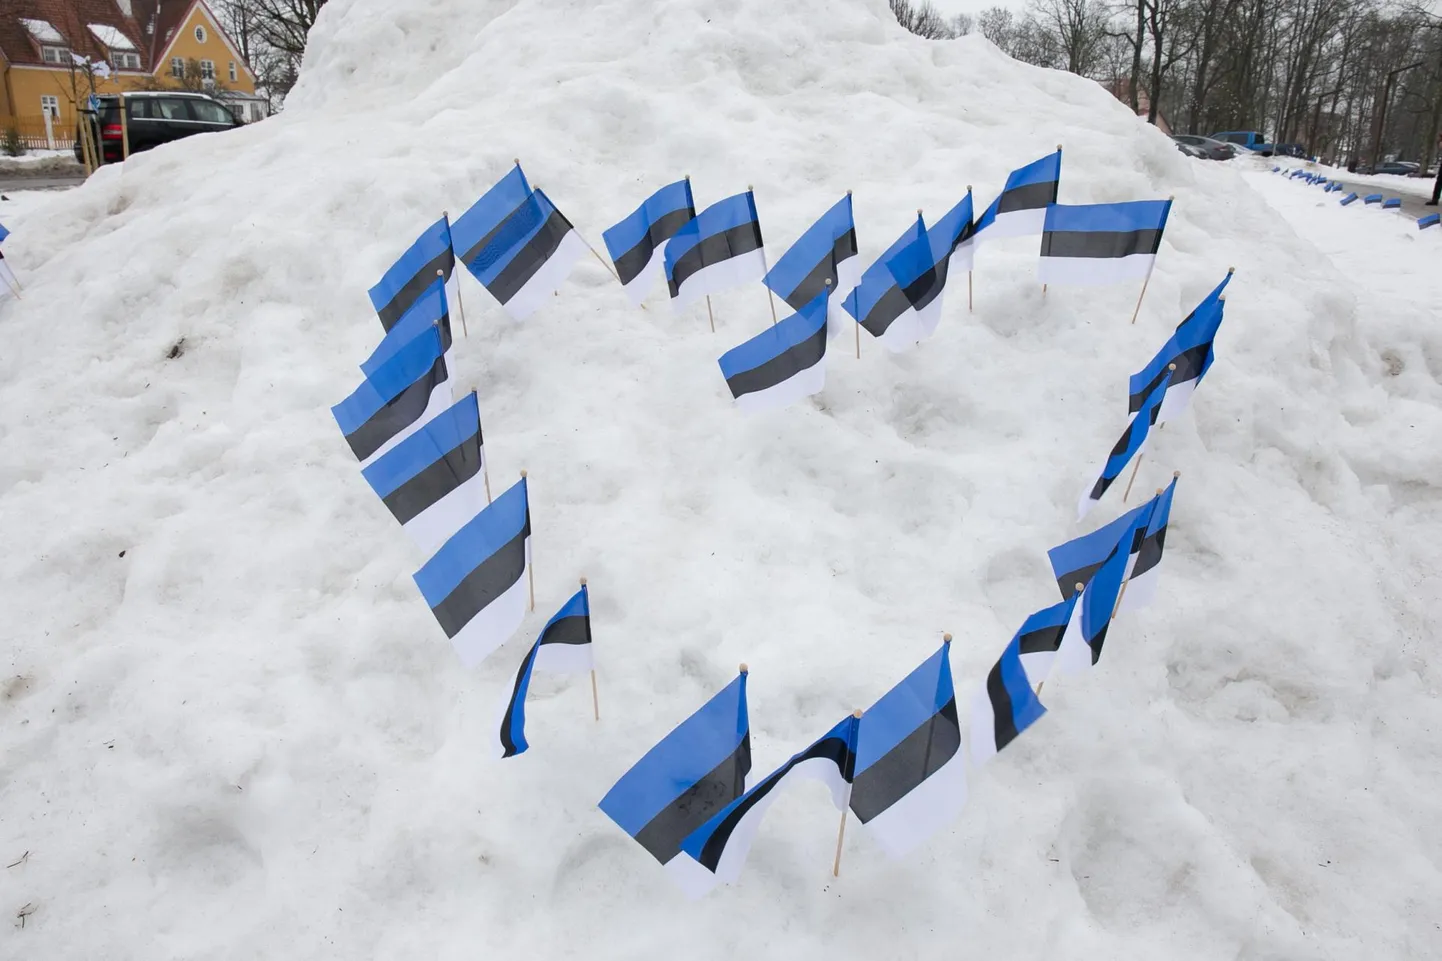 103. aastapäeva tähistati Viljandis muu hulgas sellega, et Vabaduse platsil olid lumehange südamekujuliselt pistetud Eesti lipud.